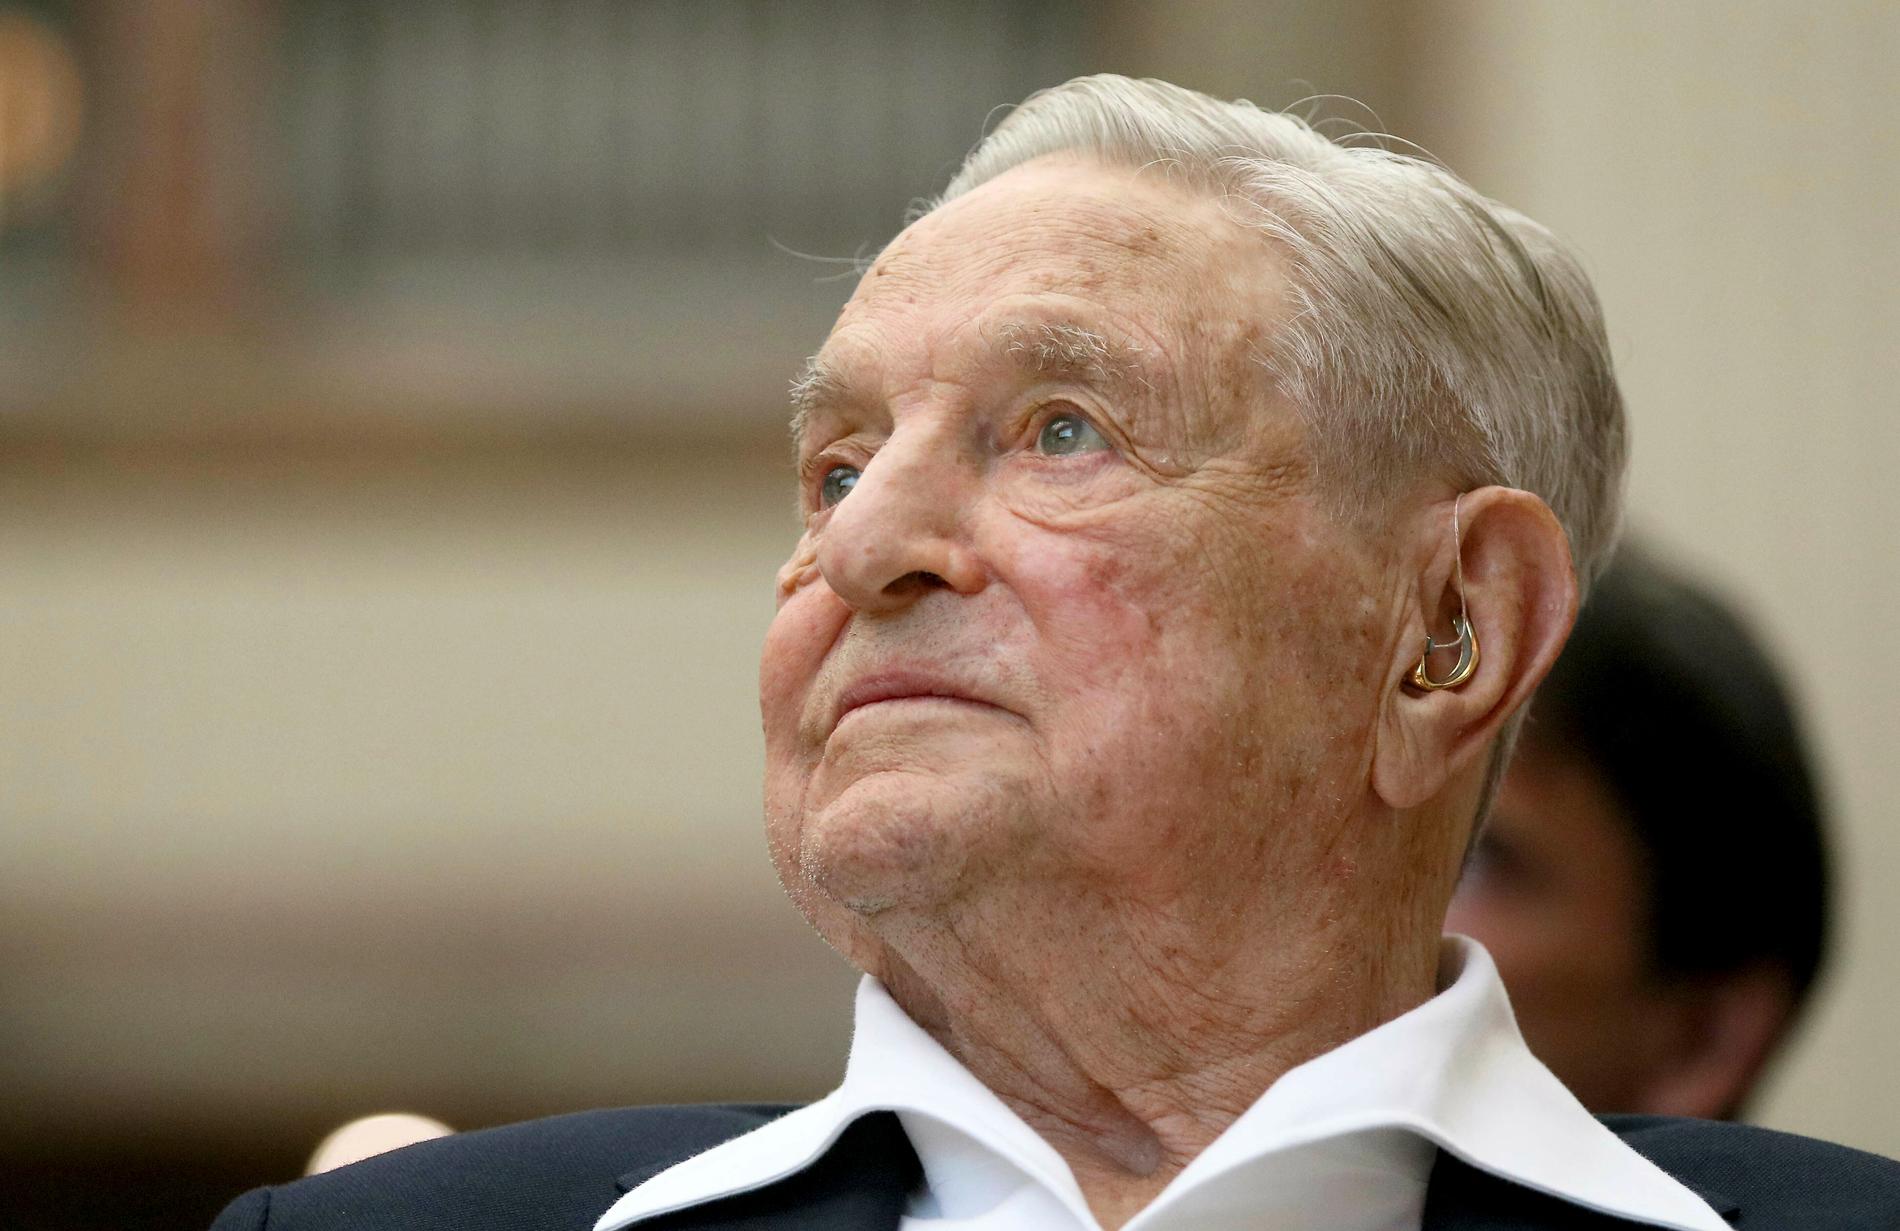 Den ungersk-amerikanske finansmannen George Soros, som är jude, liknas vid Hitler av en kulturprofil i Ungern. Arkivbild.